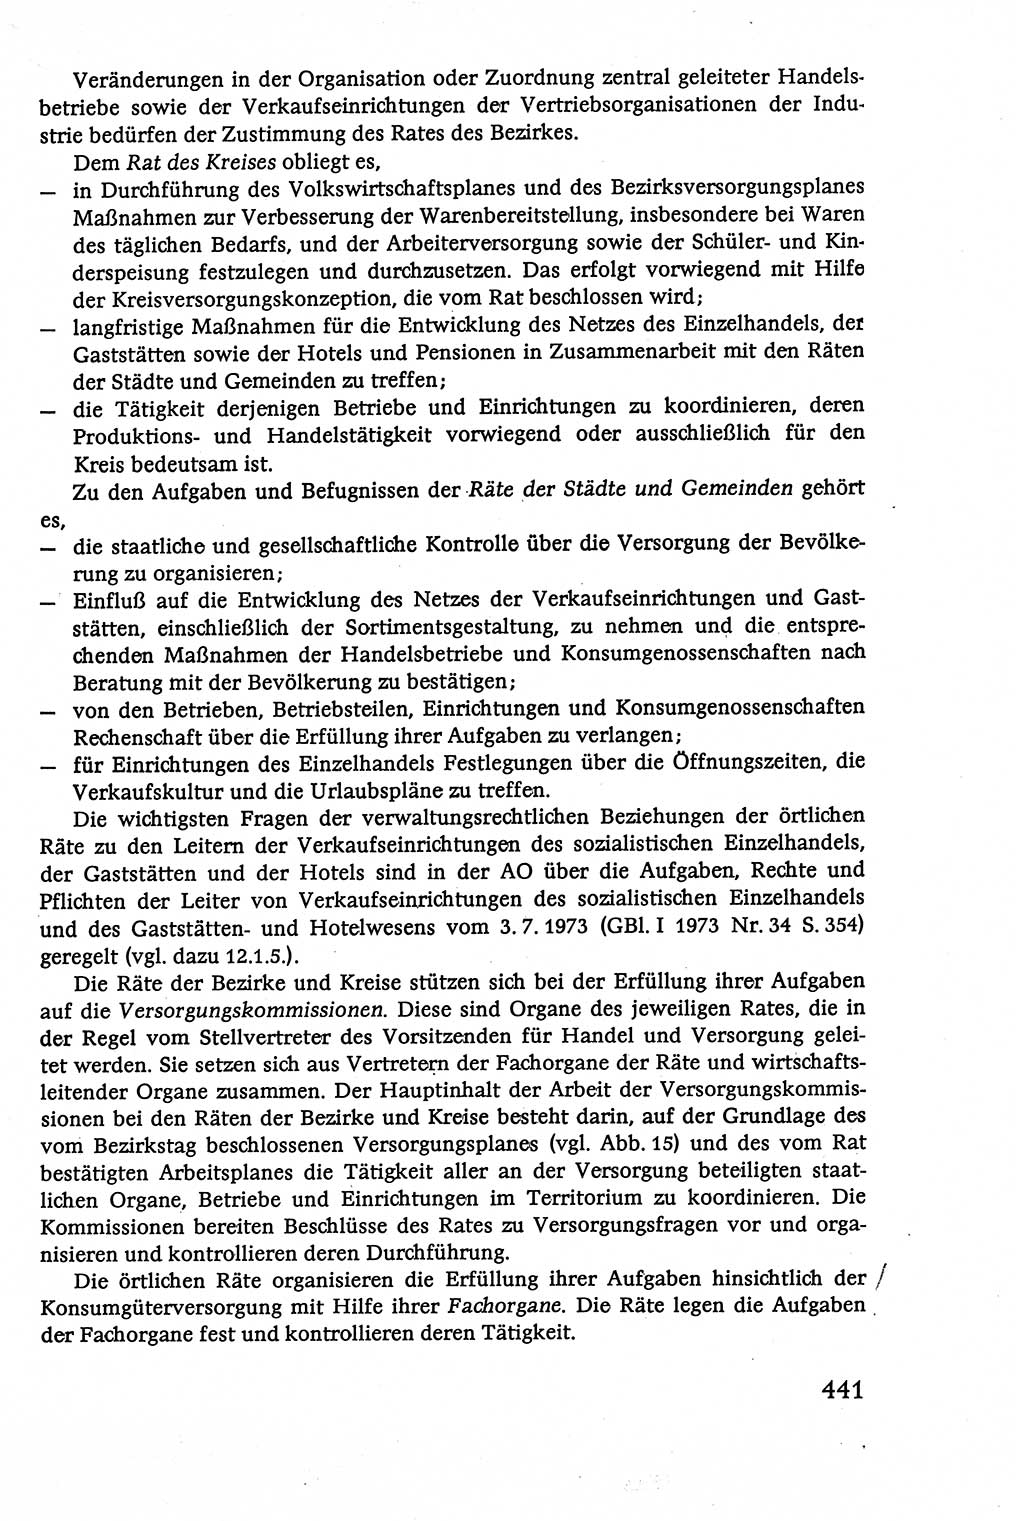 Verwaltungsrecht [Deutsche Demokratische Republik (DDR)], Lehrbuch 1979, Seite 441 (Verw.-R. DDR Lb. 1979, S. 441)